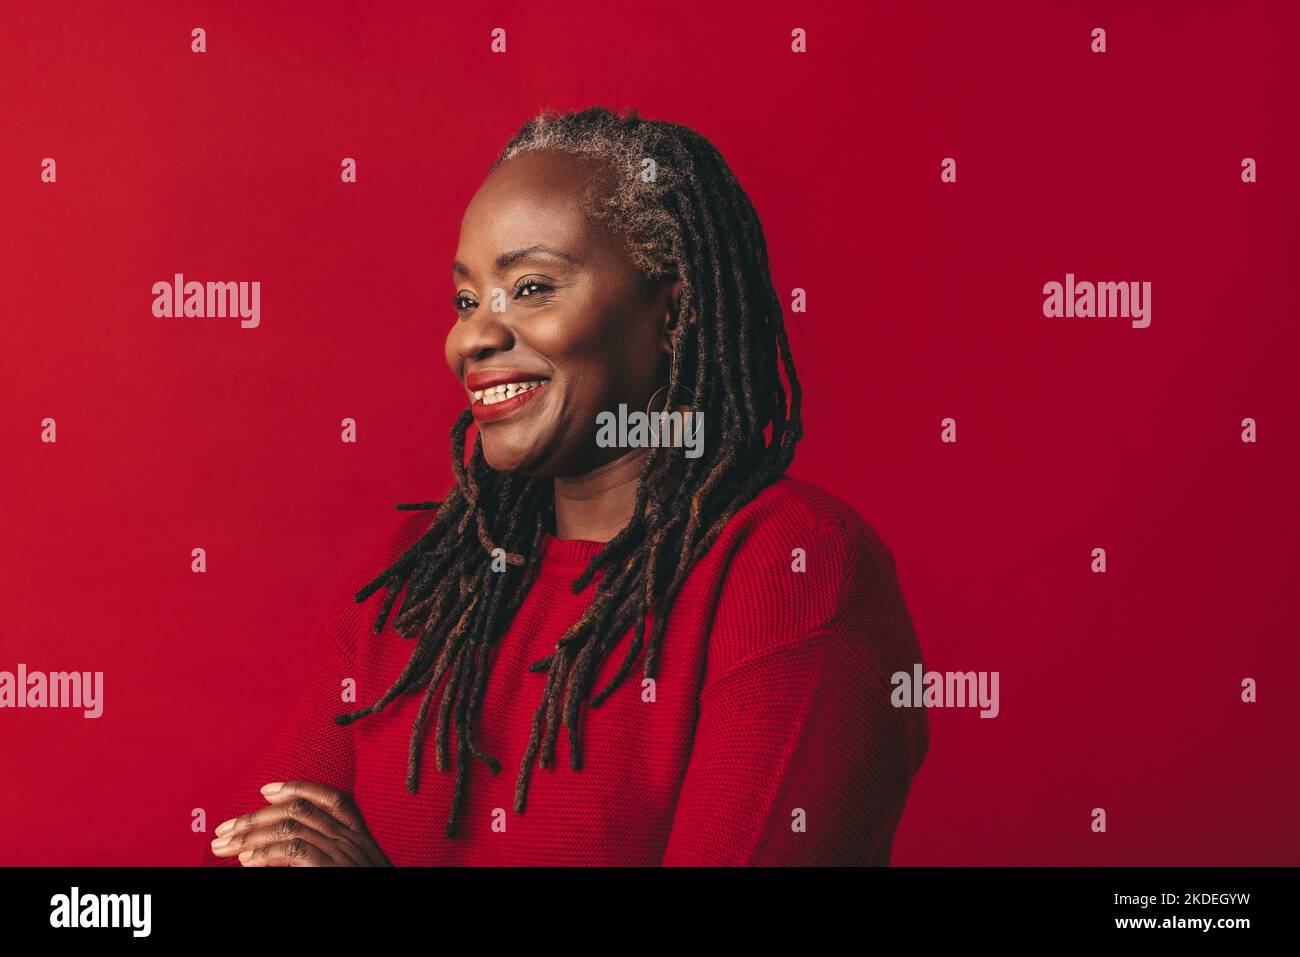 Fröhliche schwarze Frau lächelt und schaut weg, während sie vor einem roten Hintergrund steht. Glückliche reife Frau umarmt ihr natürliches Haar mit Selbstvertrauen. Stockfoto